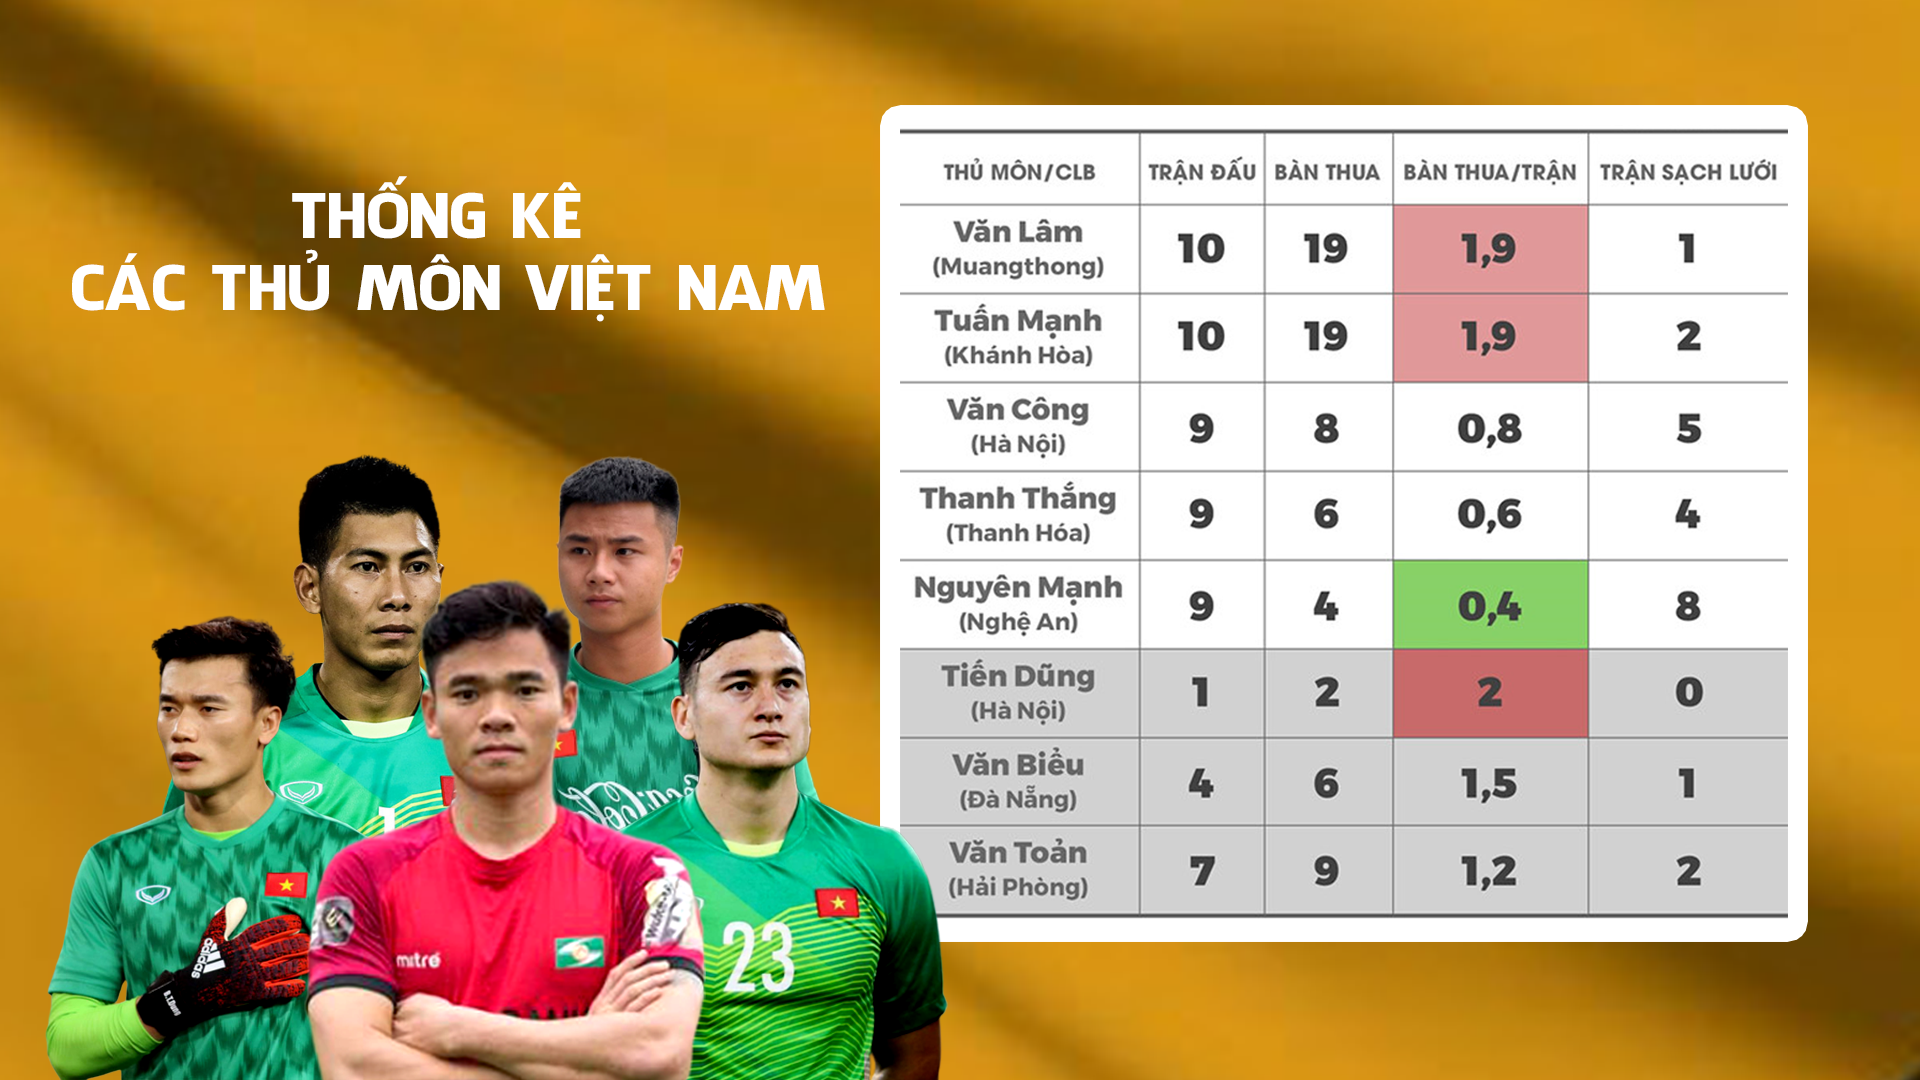 Thống kê về các thủ môn Việt Nam lúc này. Đồ họa: Trung Kiên